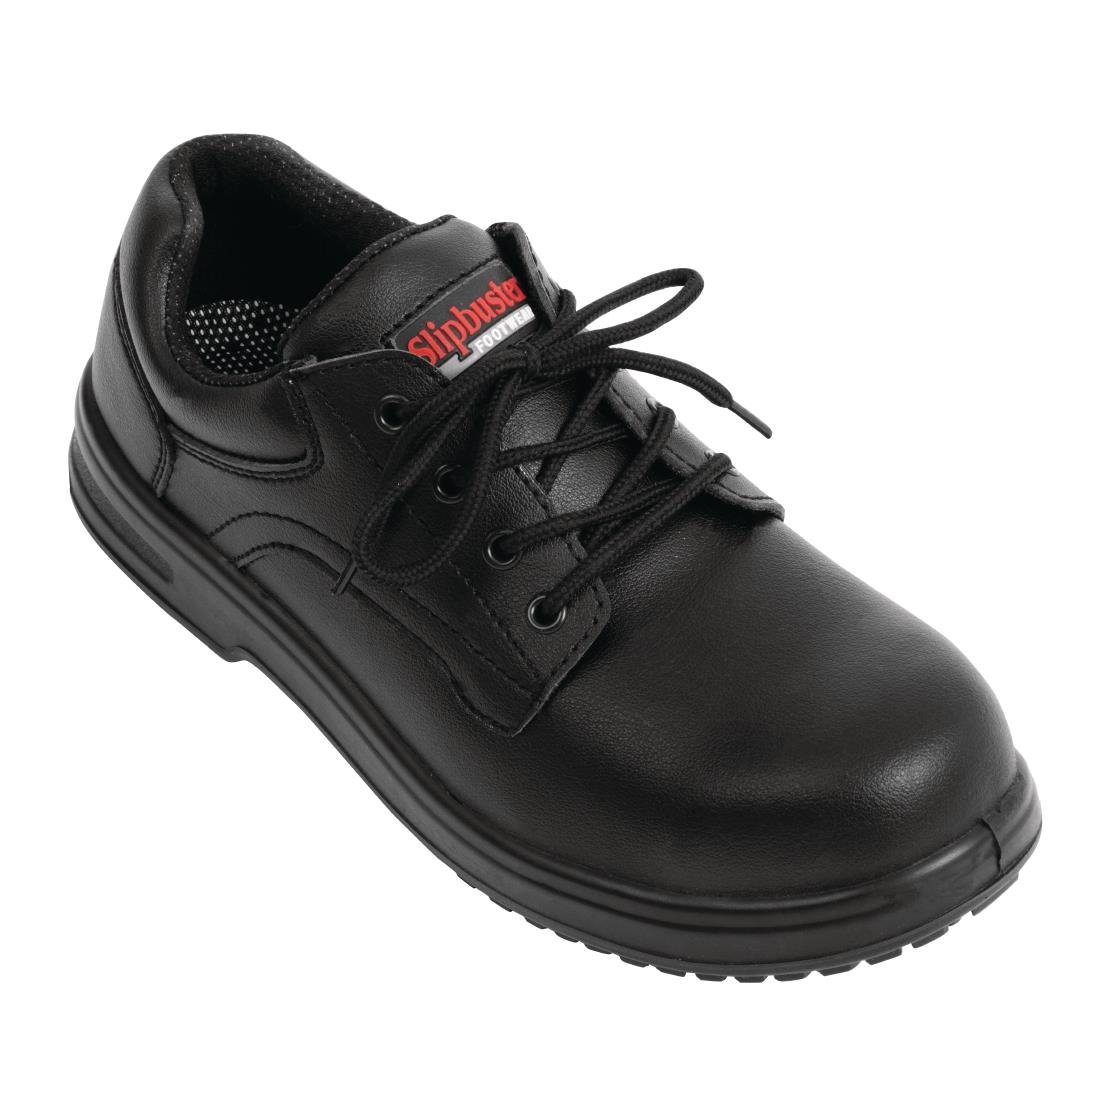 BB498-43 Slipbuster Basic Shoes Slip Resistant Black 43 JD Catering Equipment Solutions Ltd